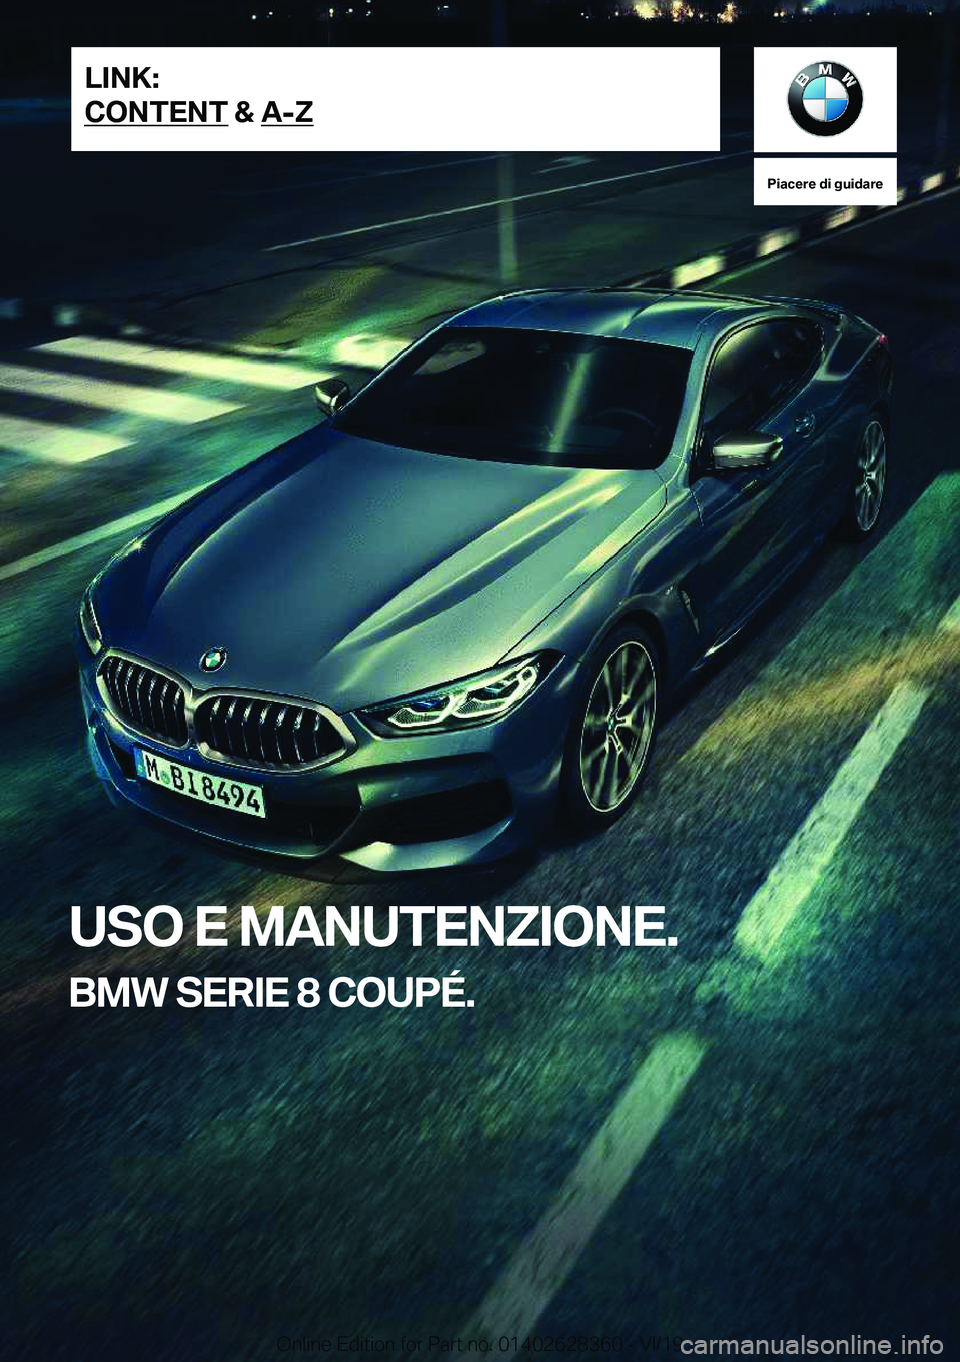 BMW 8 SERIES COUPE 2020  Libretti Di Uso E manutenzione (in Italian) �P�i�a�c�e�r�e��d�i��g�u�i�d�a�r�e
�U�S�O��E��M�A�N�U�T�E�N�Z�I�O�N�E�.
�B�M�W��S�E�R�I�E��8��C�O�U�P�